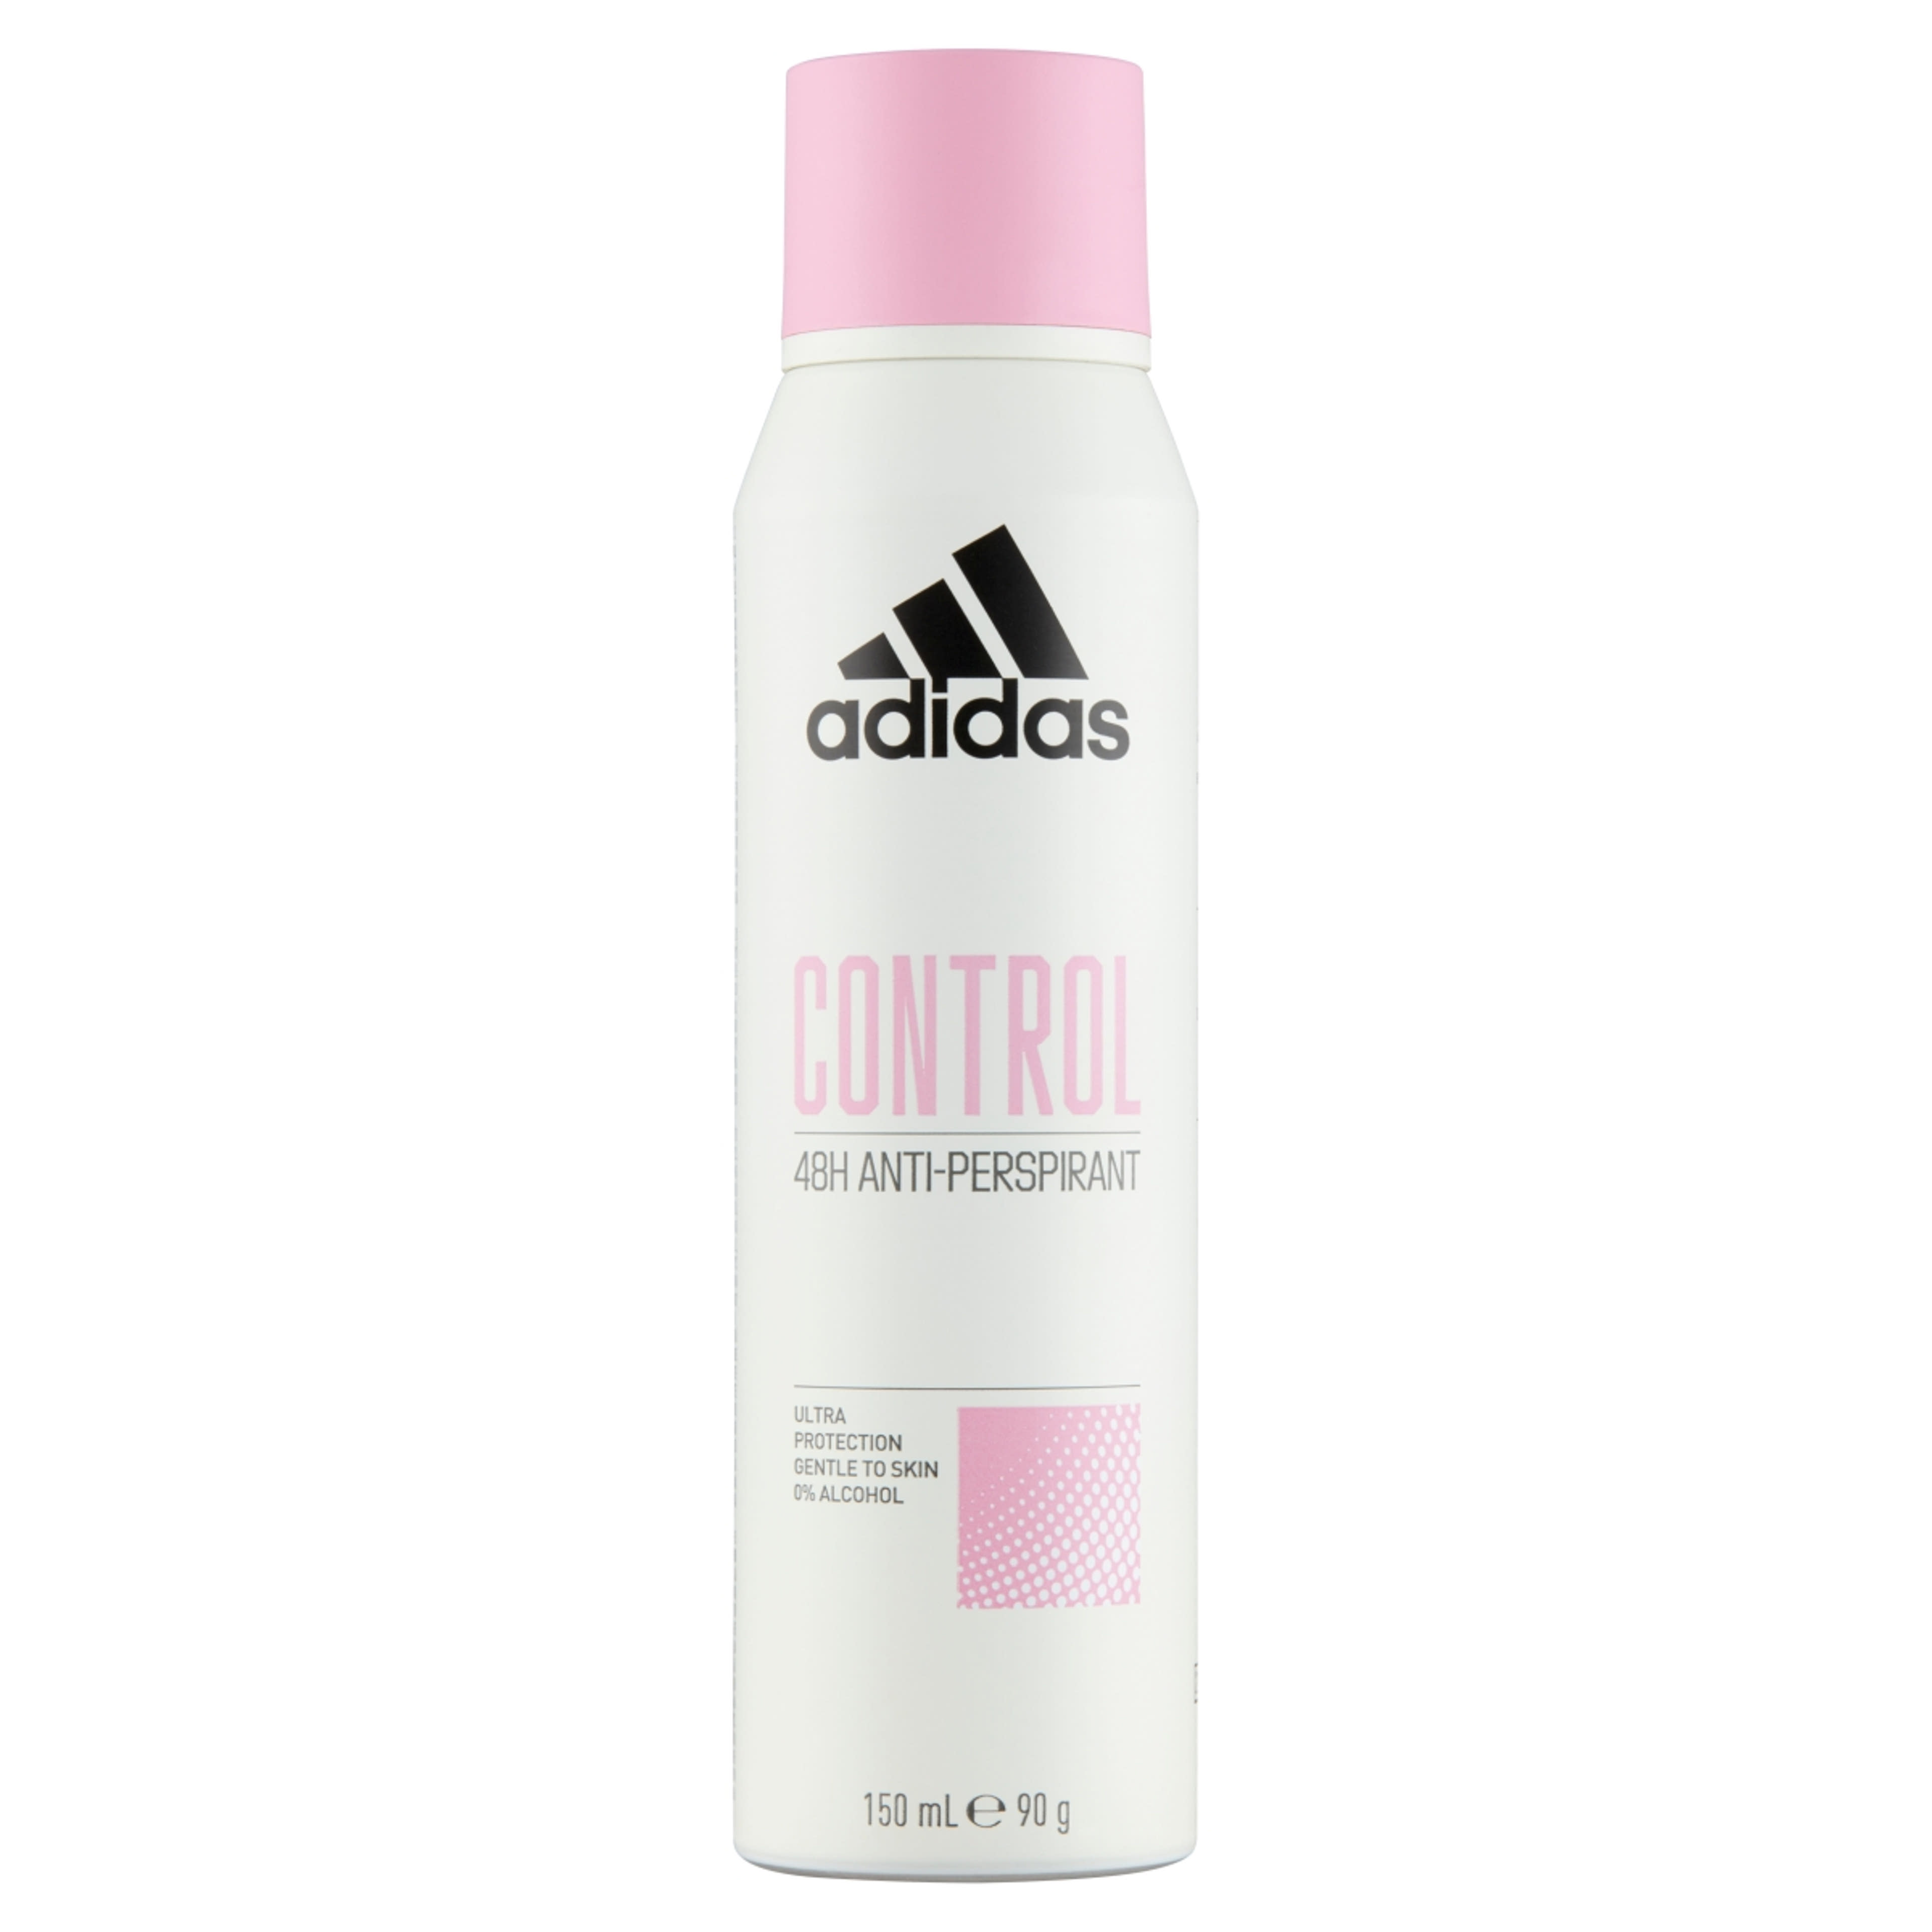 Adidas Control női izzadásgátló dezodor - 150 ml-1